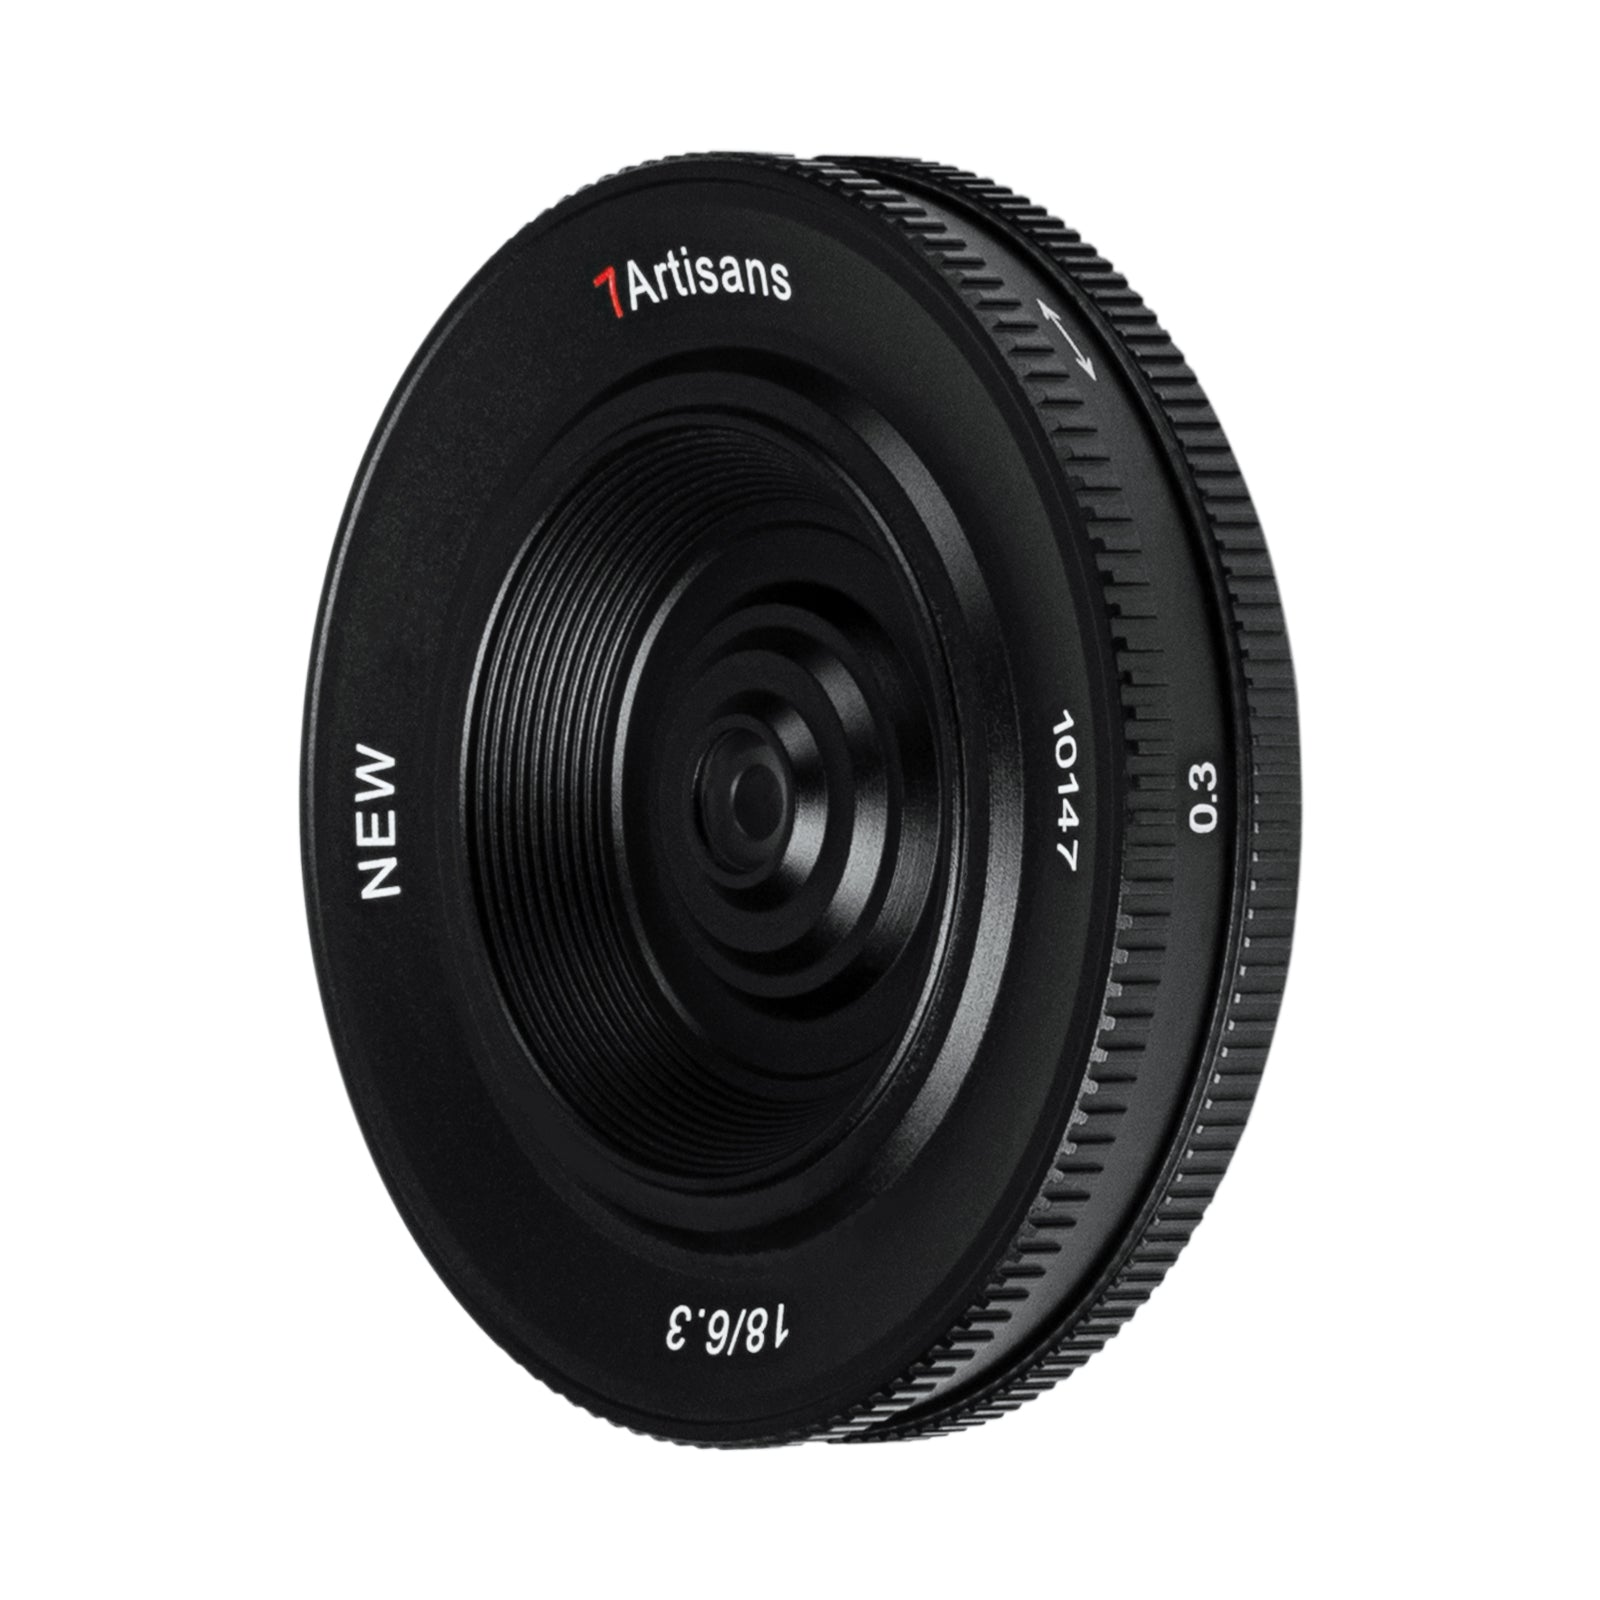 7artisans 18mm f/6.3 Mark II APS-C Lens for Nikon Z